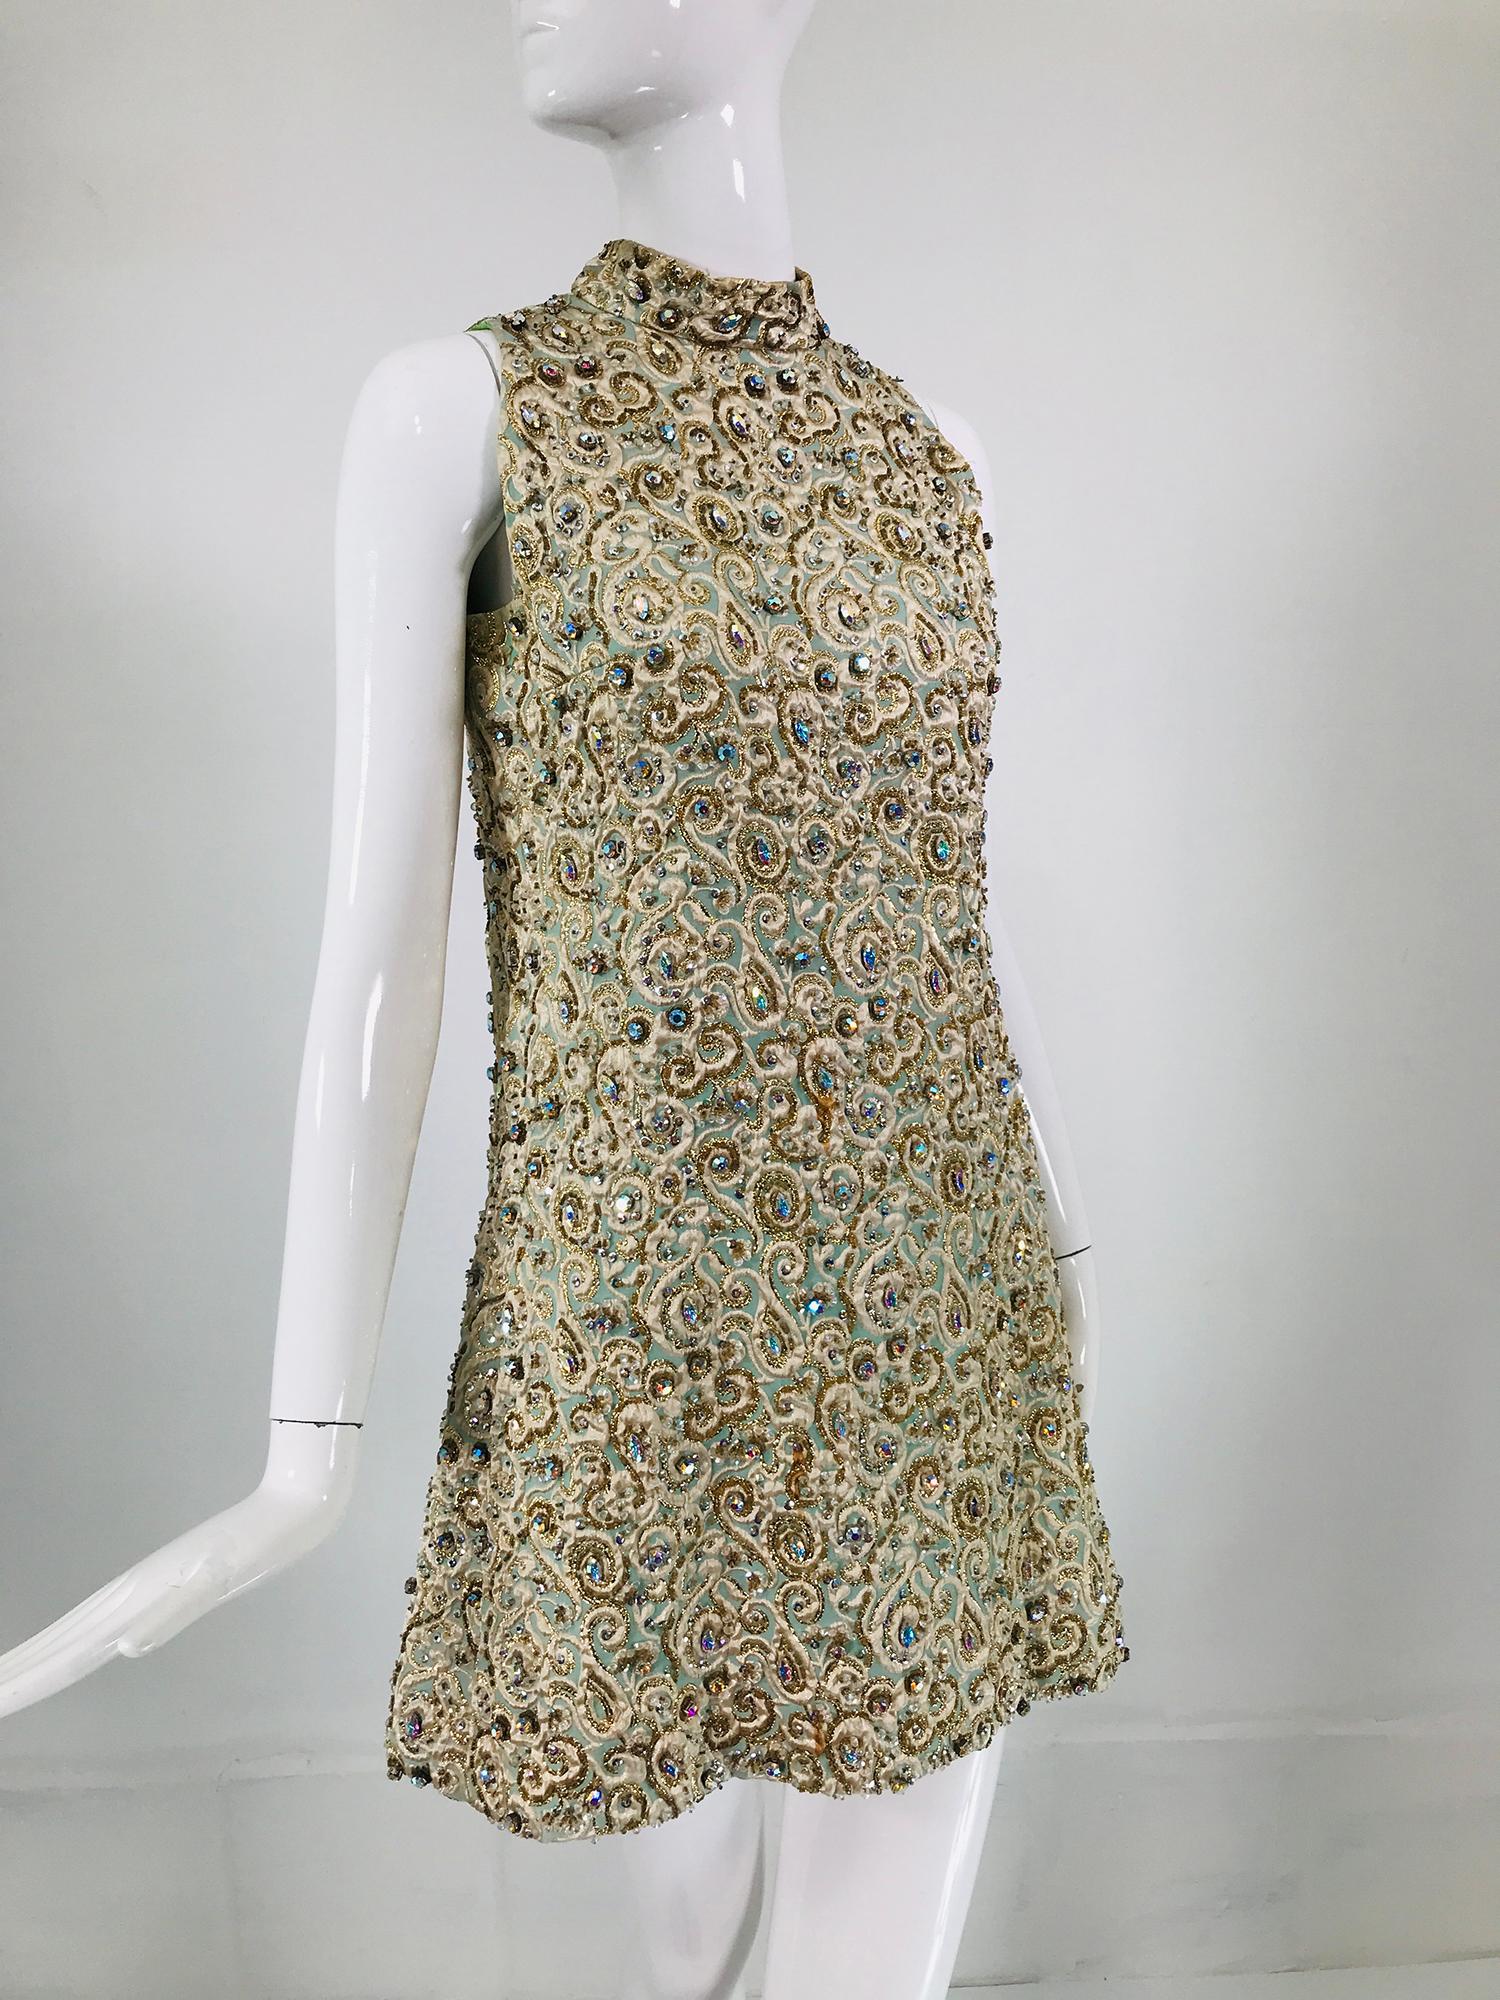 Marie McCarthy für Larry Aldrich stark perlenbesetztes Brokat-Minikleid in A-Linie mit Neckholder-Ausschnitt aus den 1960er Jahren. Aqua-, creme- und goldfarbener Metallbrokat ist mit großen und kleinen schillernden Strasssteinen, Pailletten und